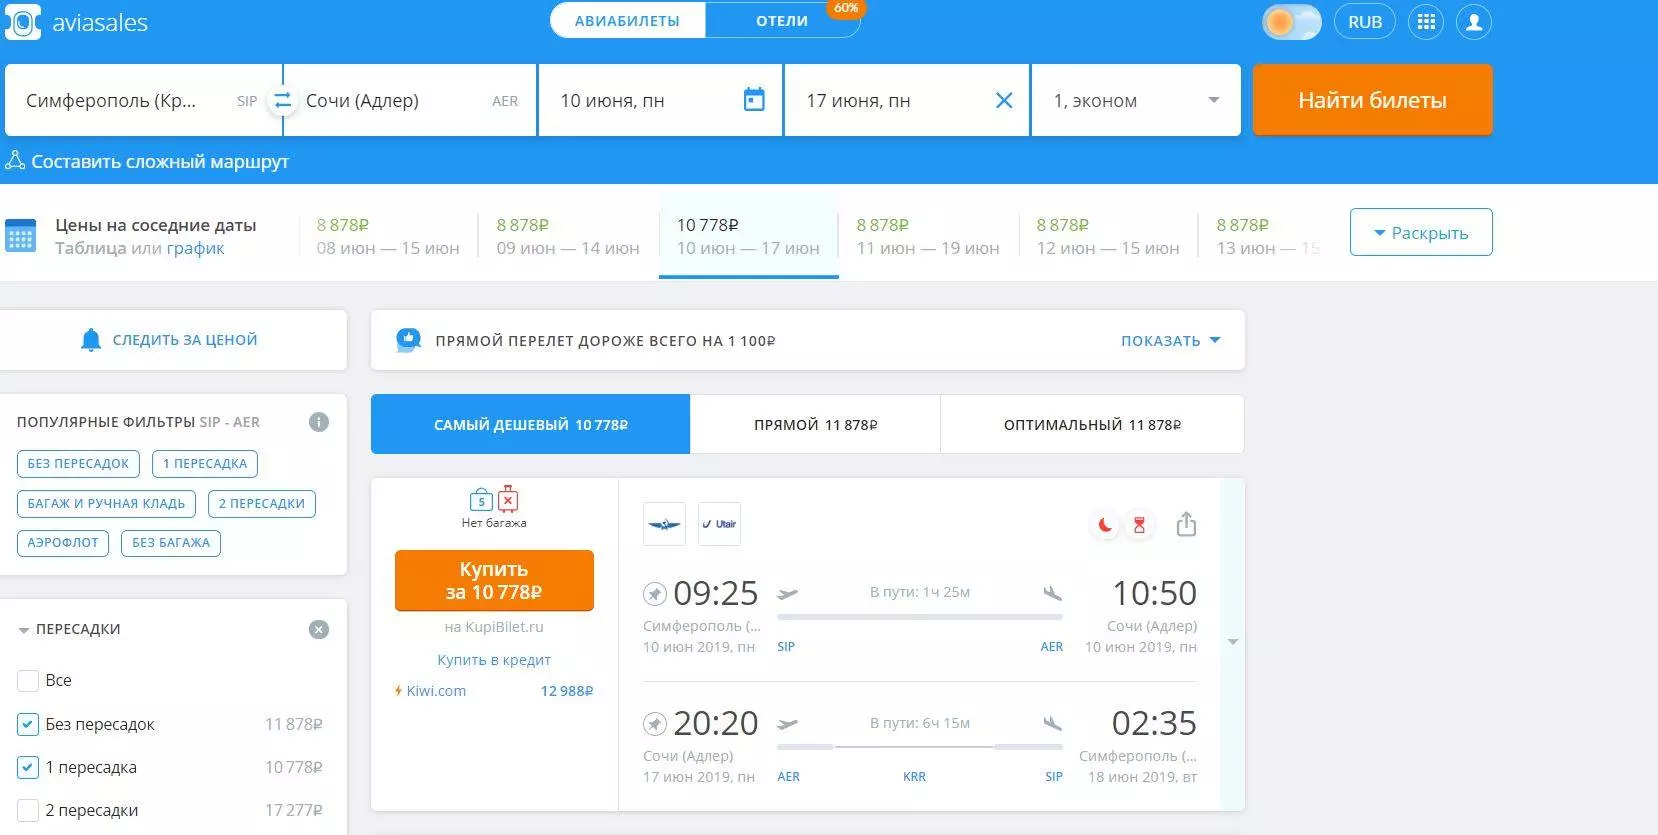 Где и как купить дешевые билеты на самолет по России